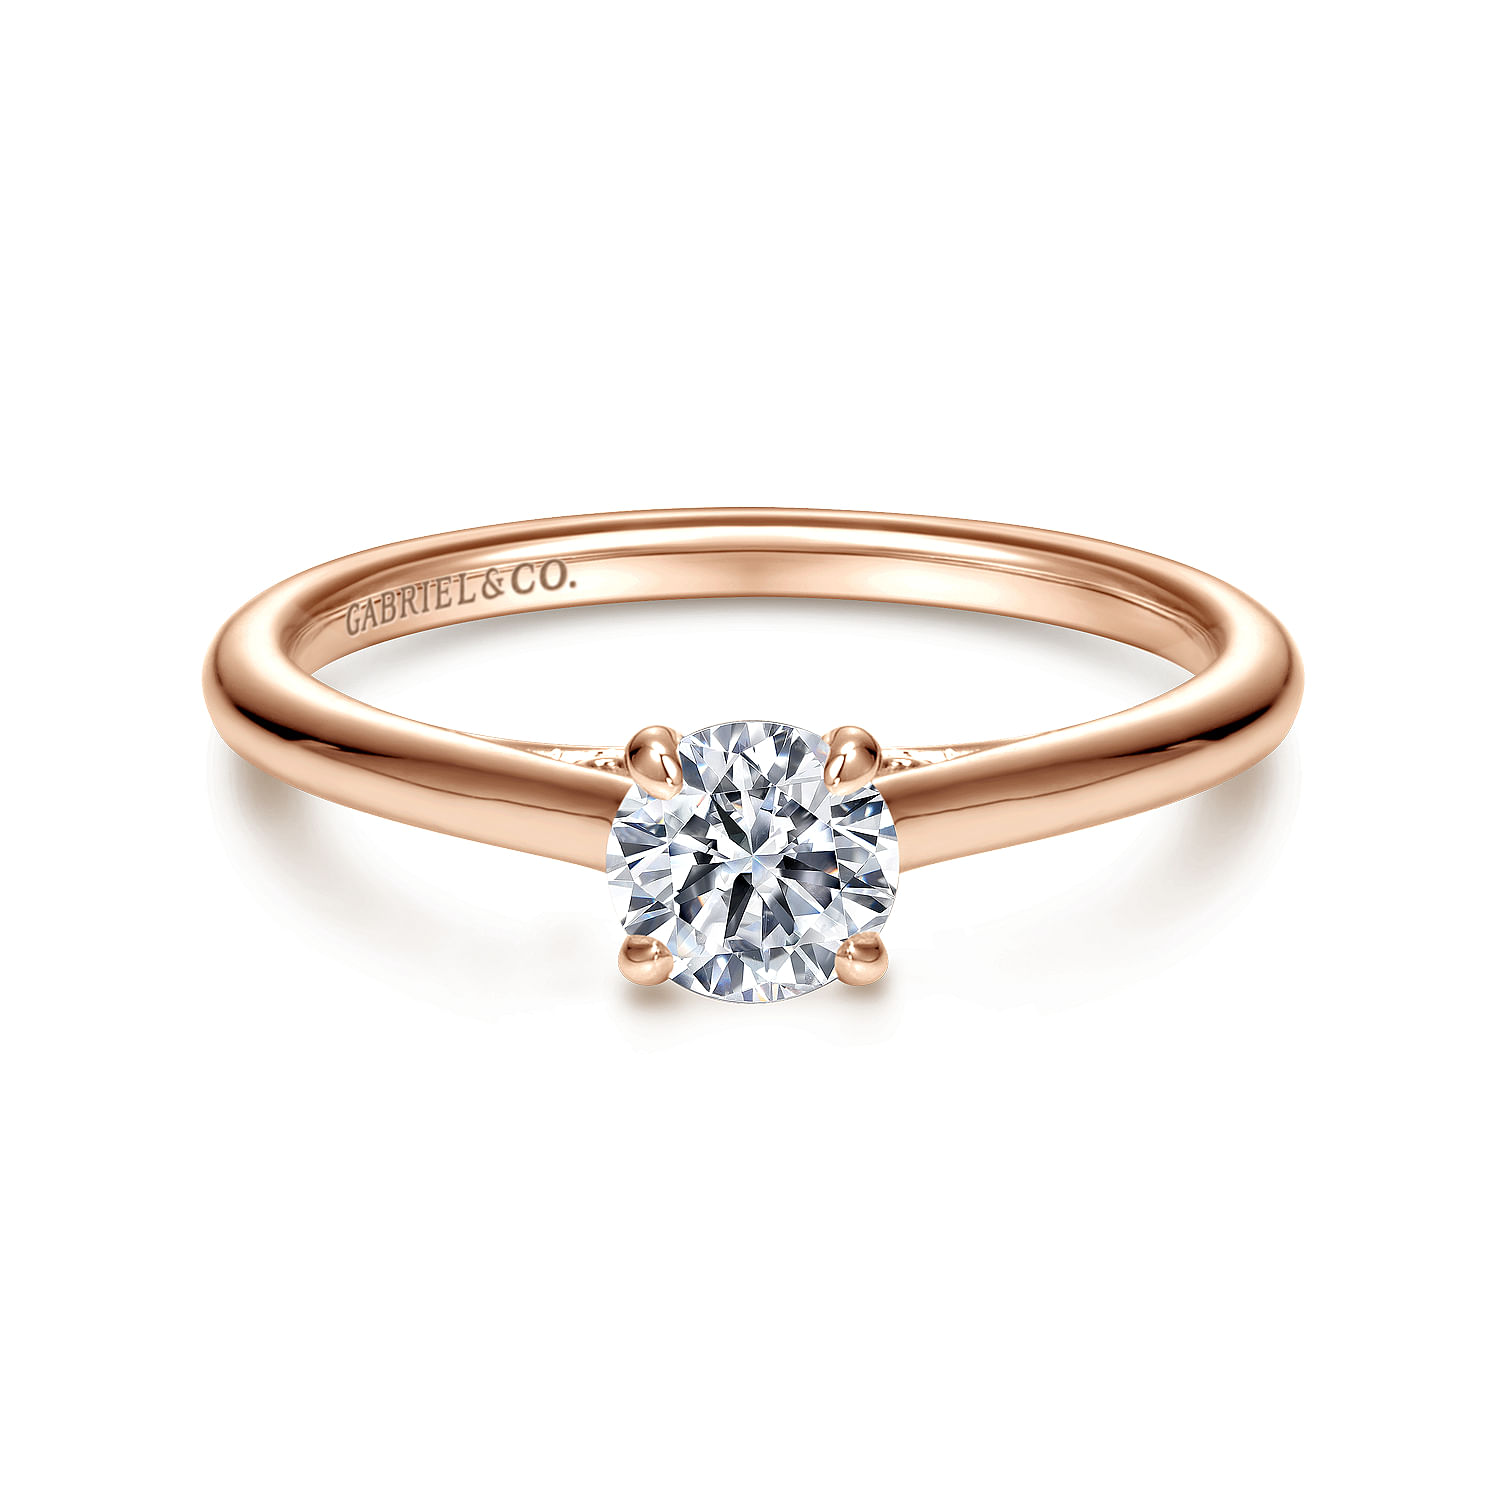 Valerie - Vintage Inspired 14K Rose Gold Round Diamond Engagement Ring